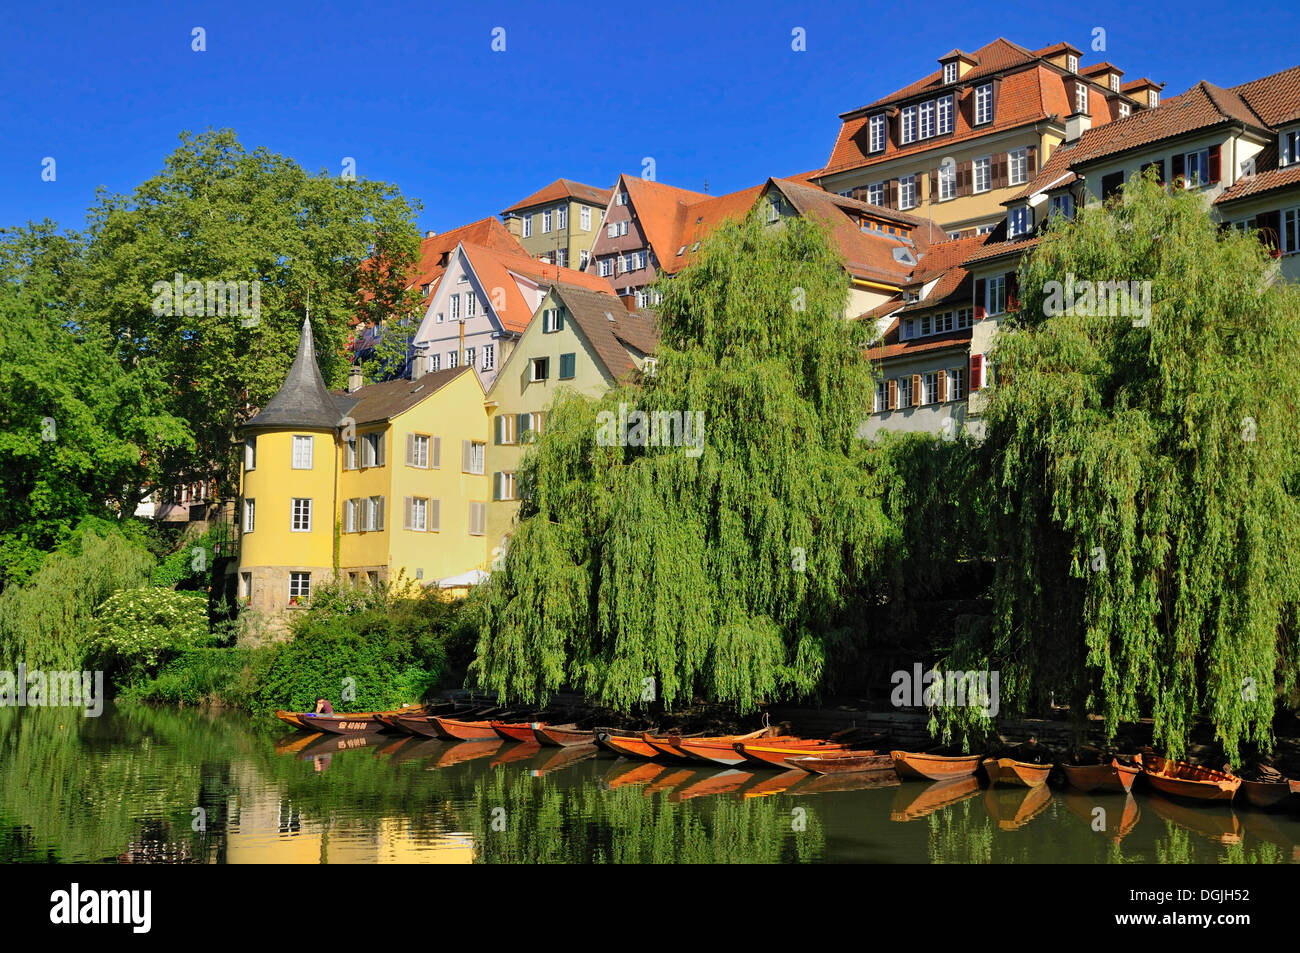 Hoelderlin Tower, punts and the old town of Tuebingen, Tübingen, Baden-Württemberg, Germany Stock Photo